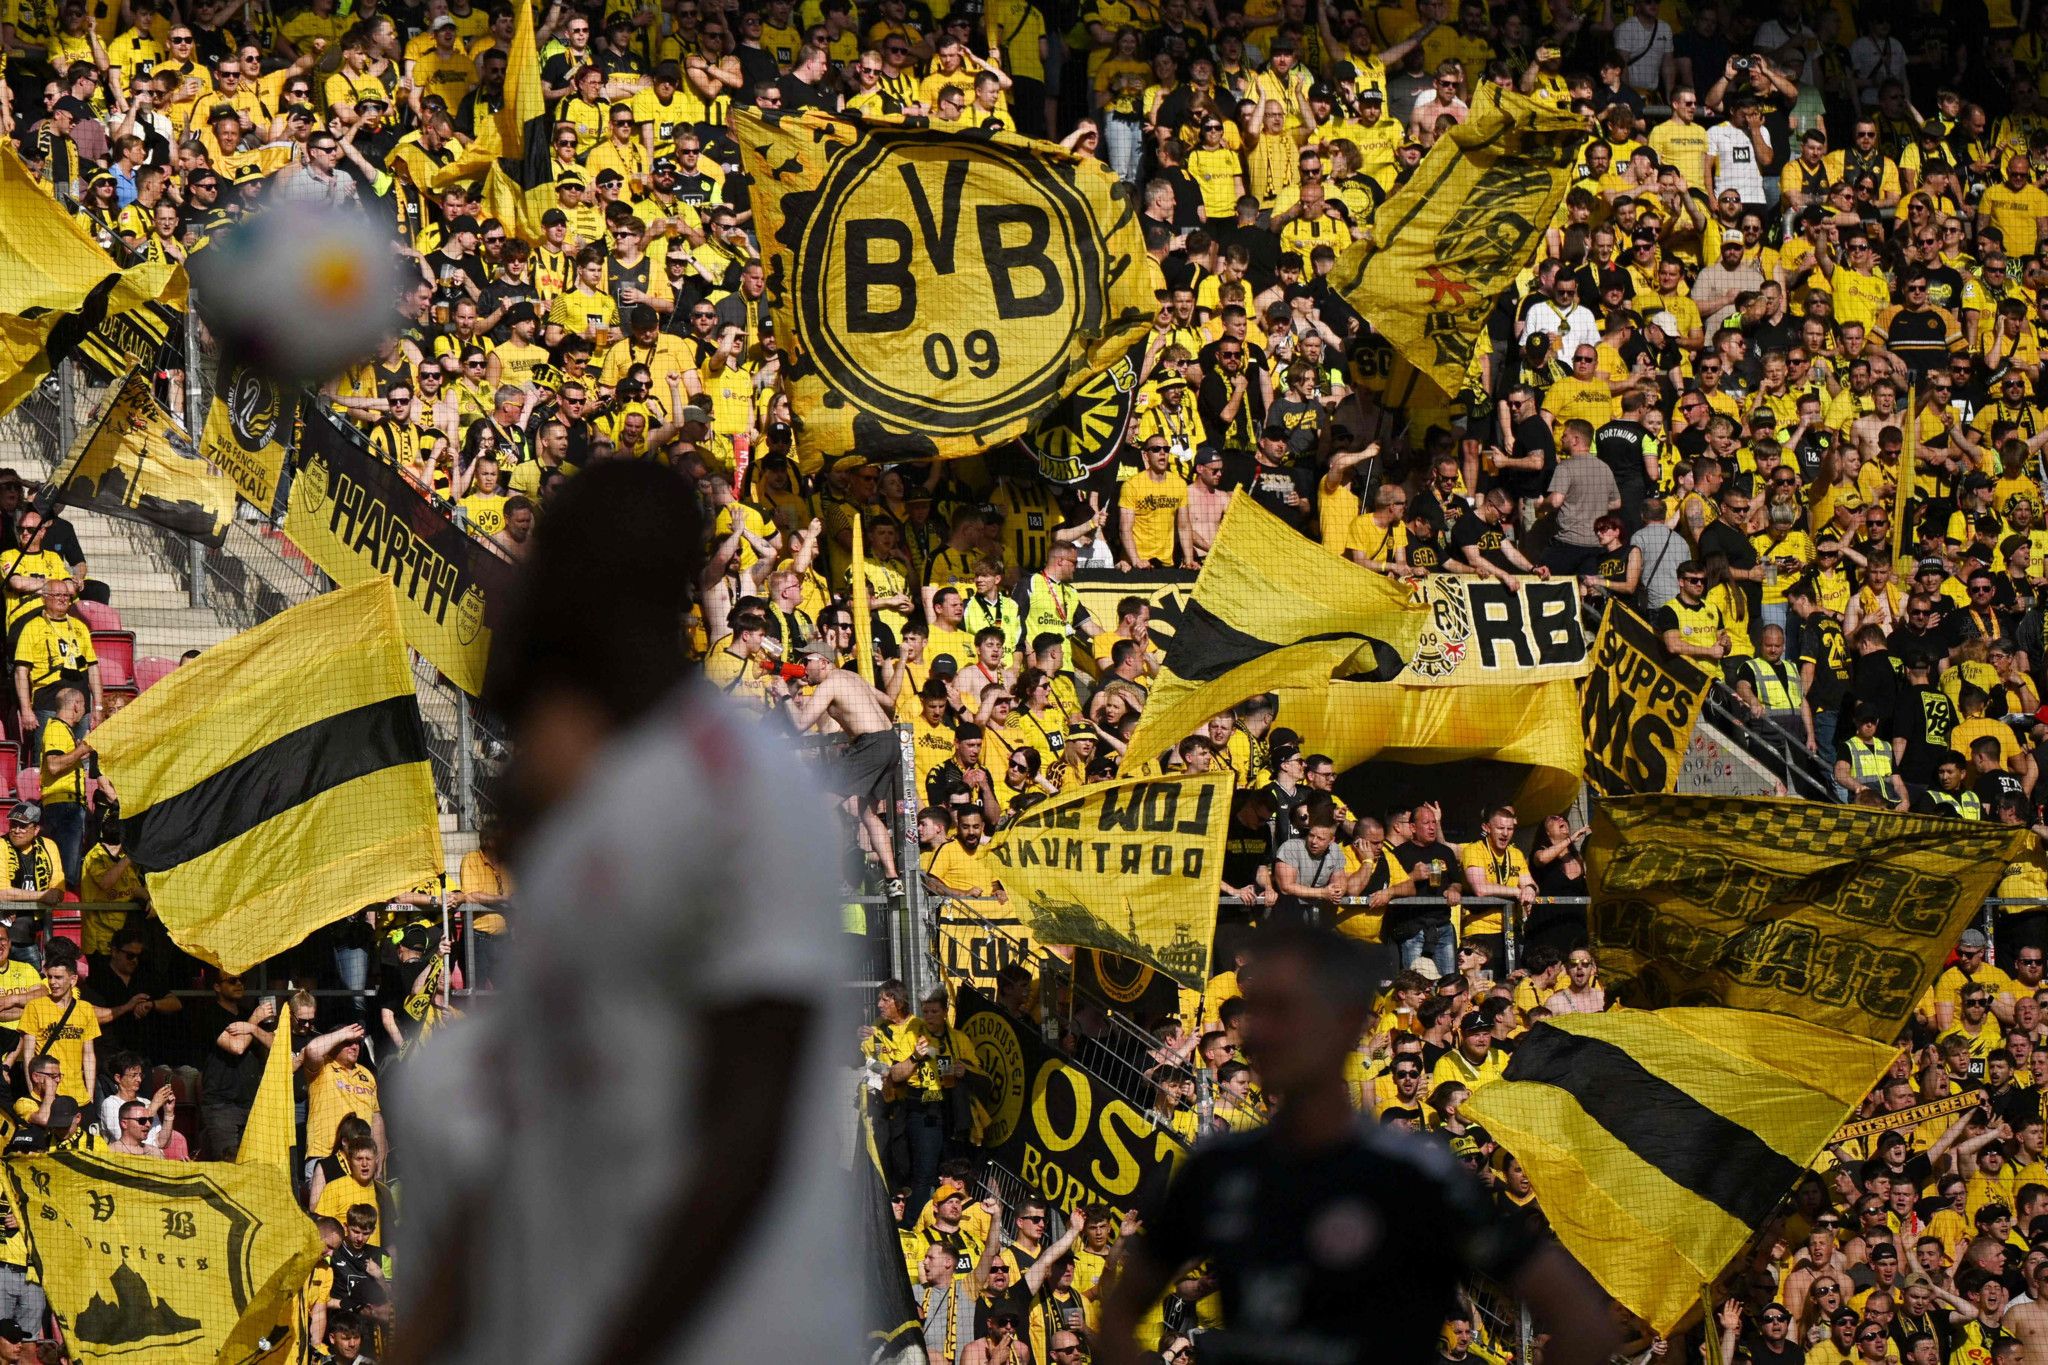 Le deal du BVB Dortmund avec un fabricant d'armes ne passe pas